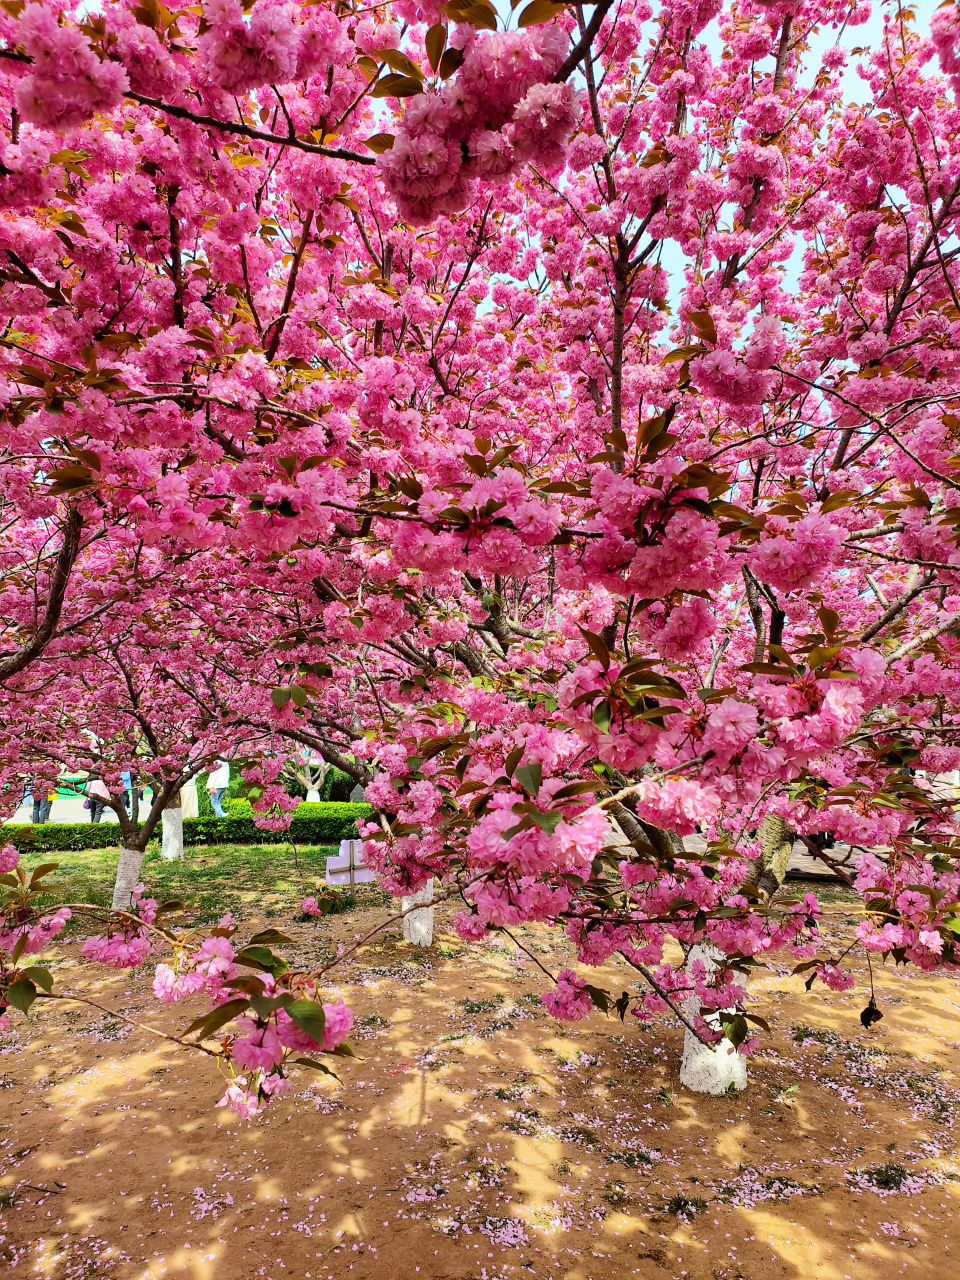 大连旅顺二零三樱花园,东北地区最大樱花园,三十多个樱花品种,太美了